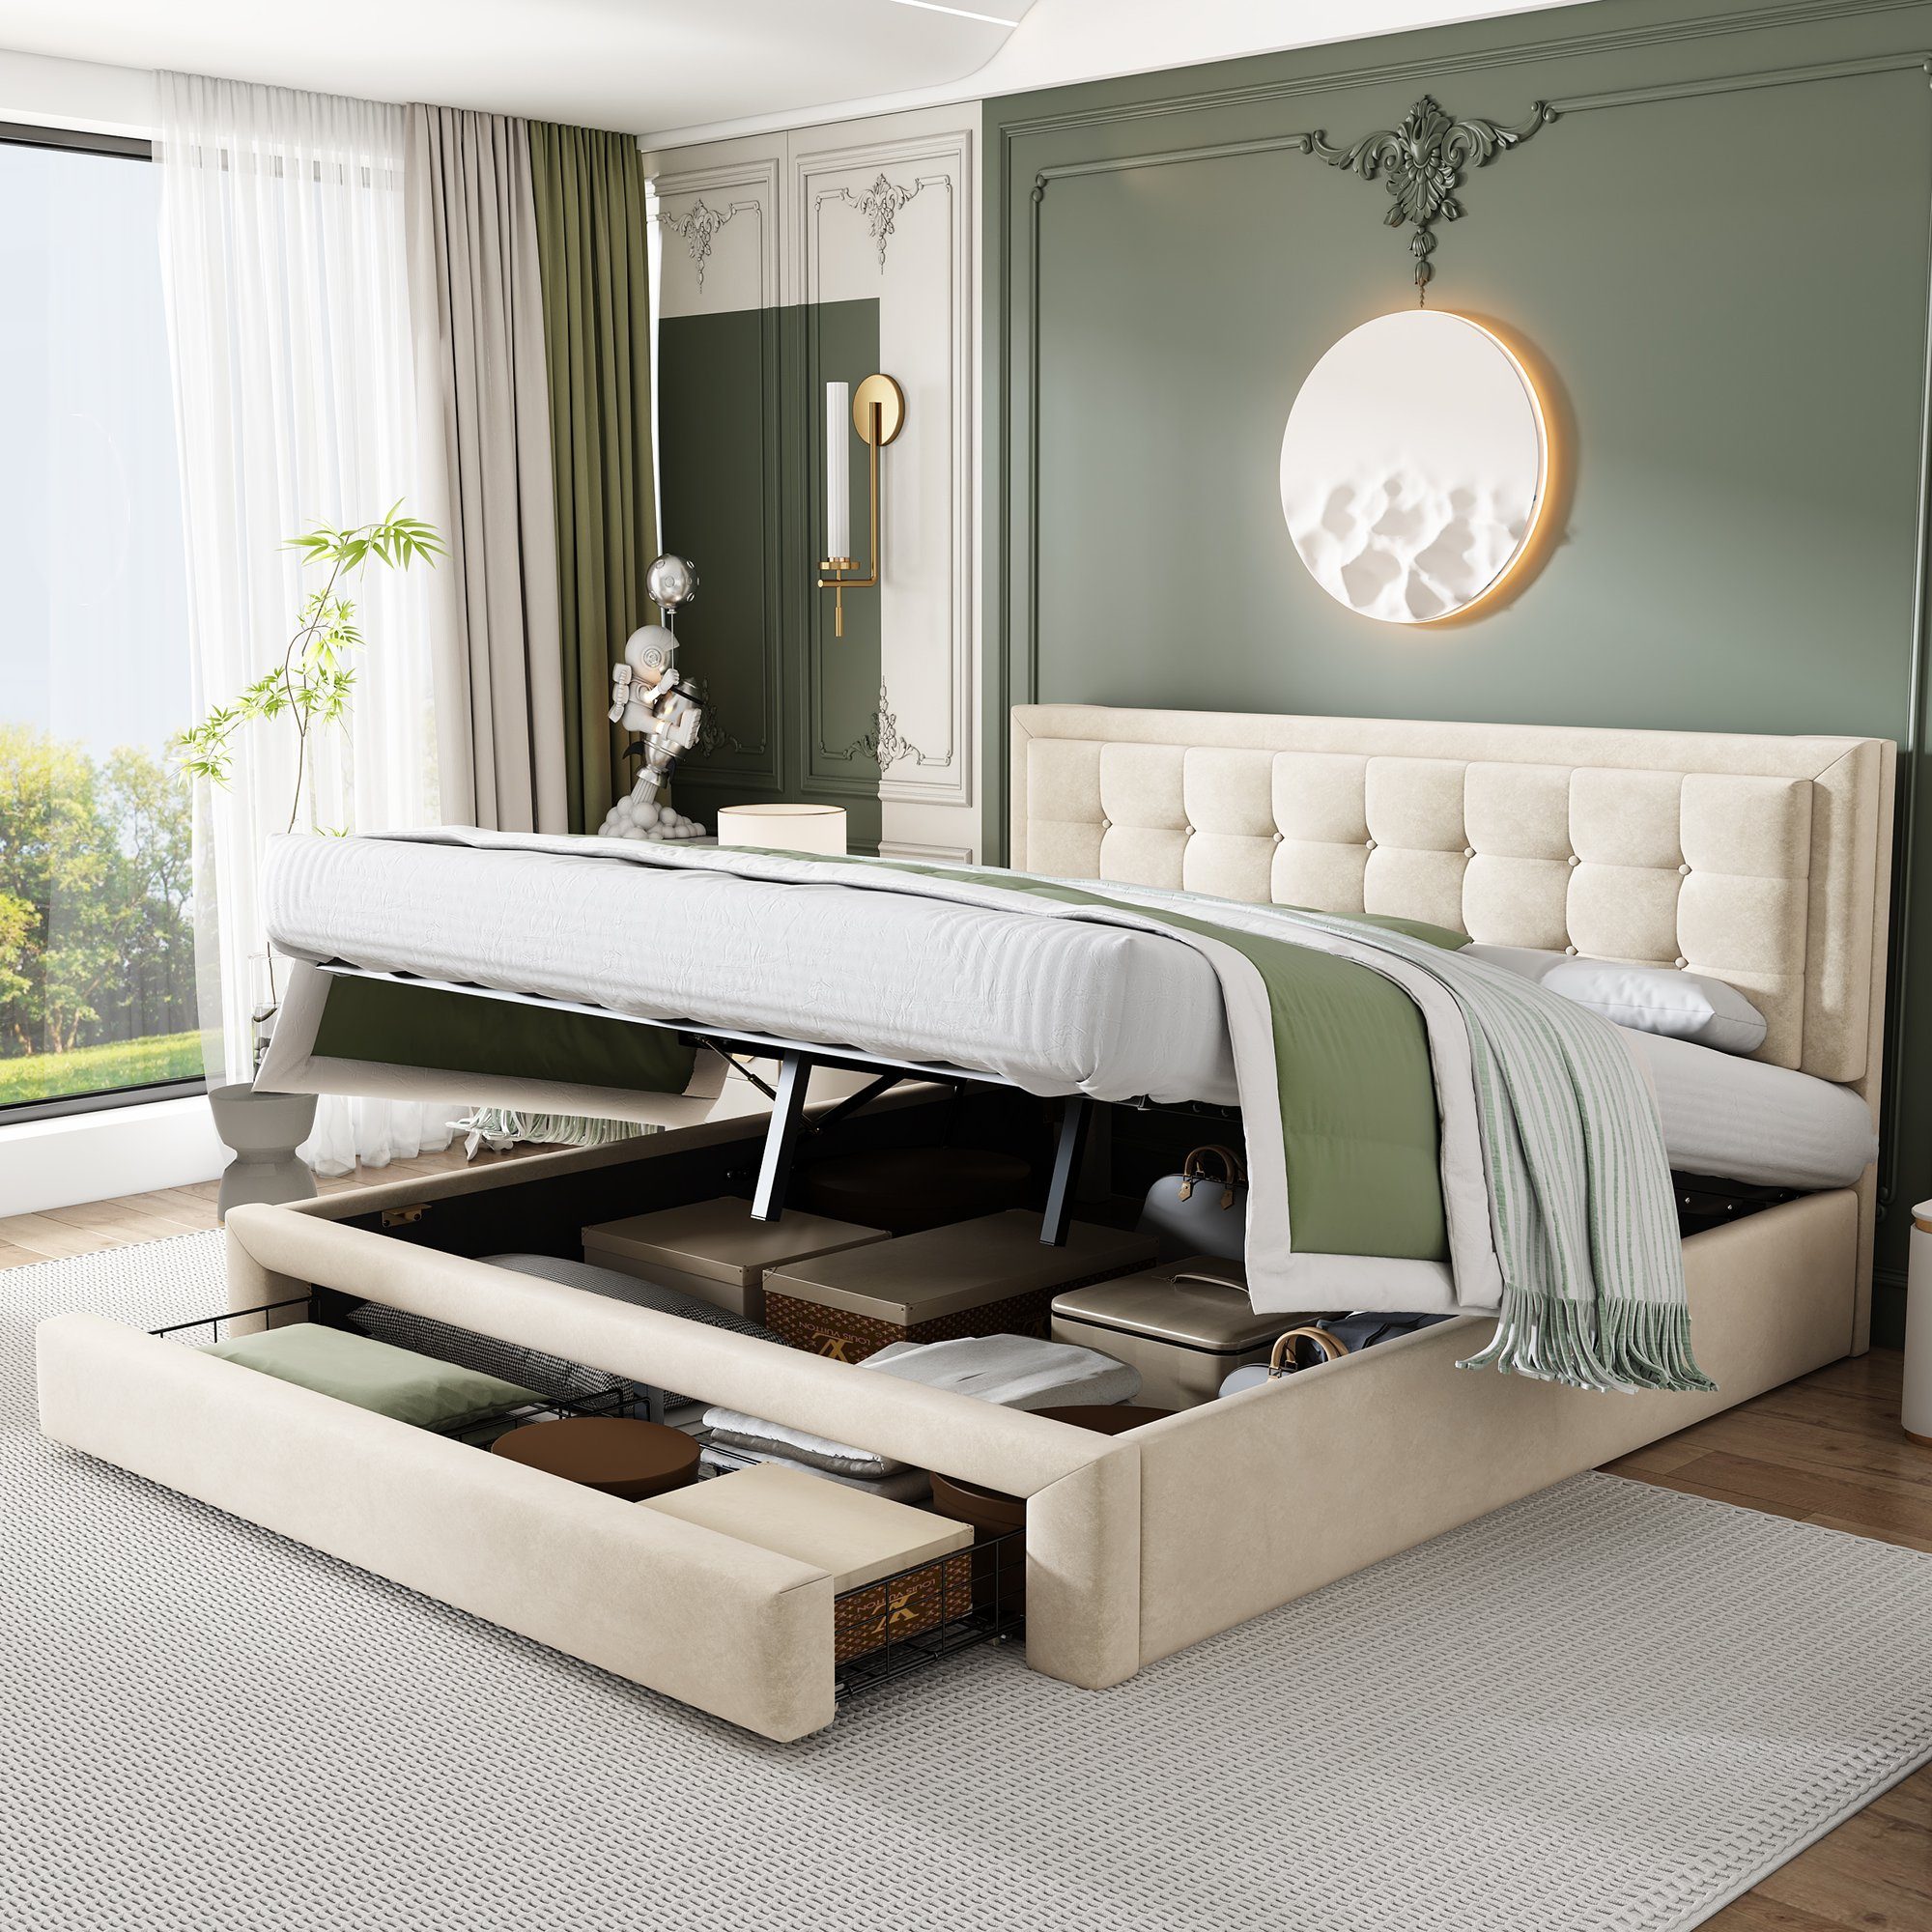 WISHDOR Polsterbett Doppelbett Polsterbett Bett mit Lattenrost (180x200 cm ohne Matratze, großer Stauraum), mit Kasten und Schubladen, Samtstoff Weiß